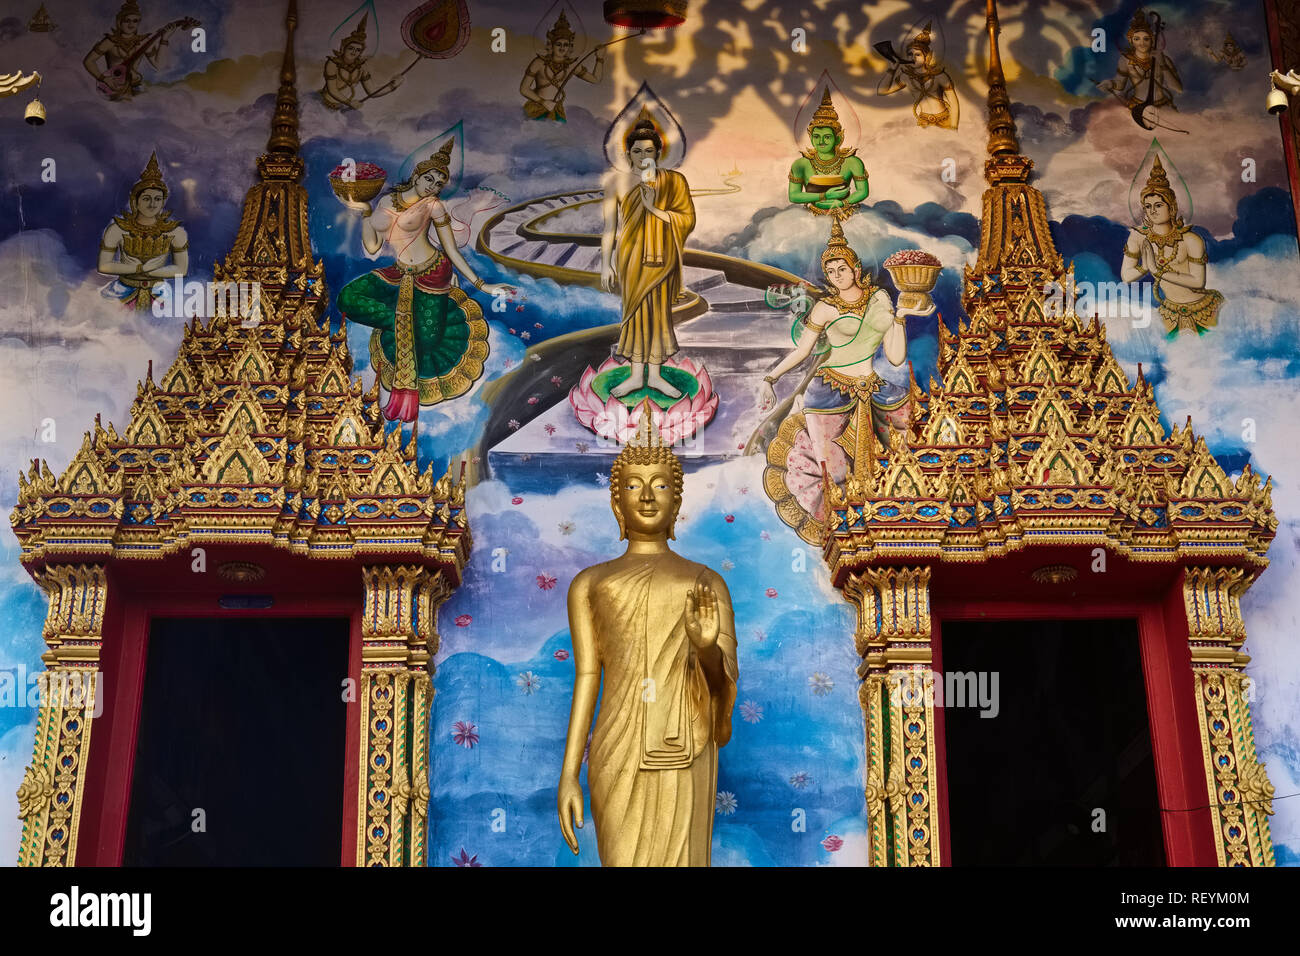 L'entrée principale de Wat Phra Nang Sang, Thalang, Phuket, Thaïlande, une statue d'un bouddha affichant le mudra (geste) de dissiper la crainte (Abhaya) Banque D'Images